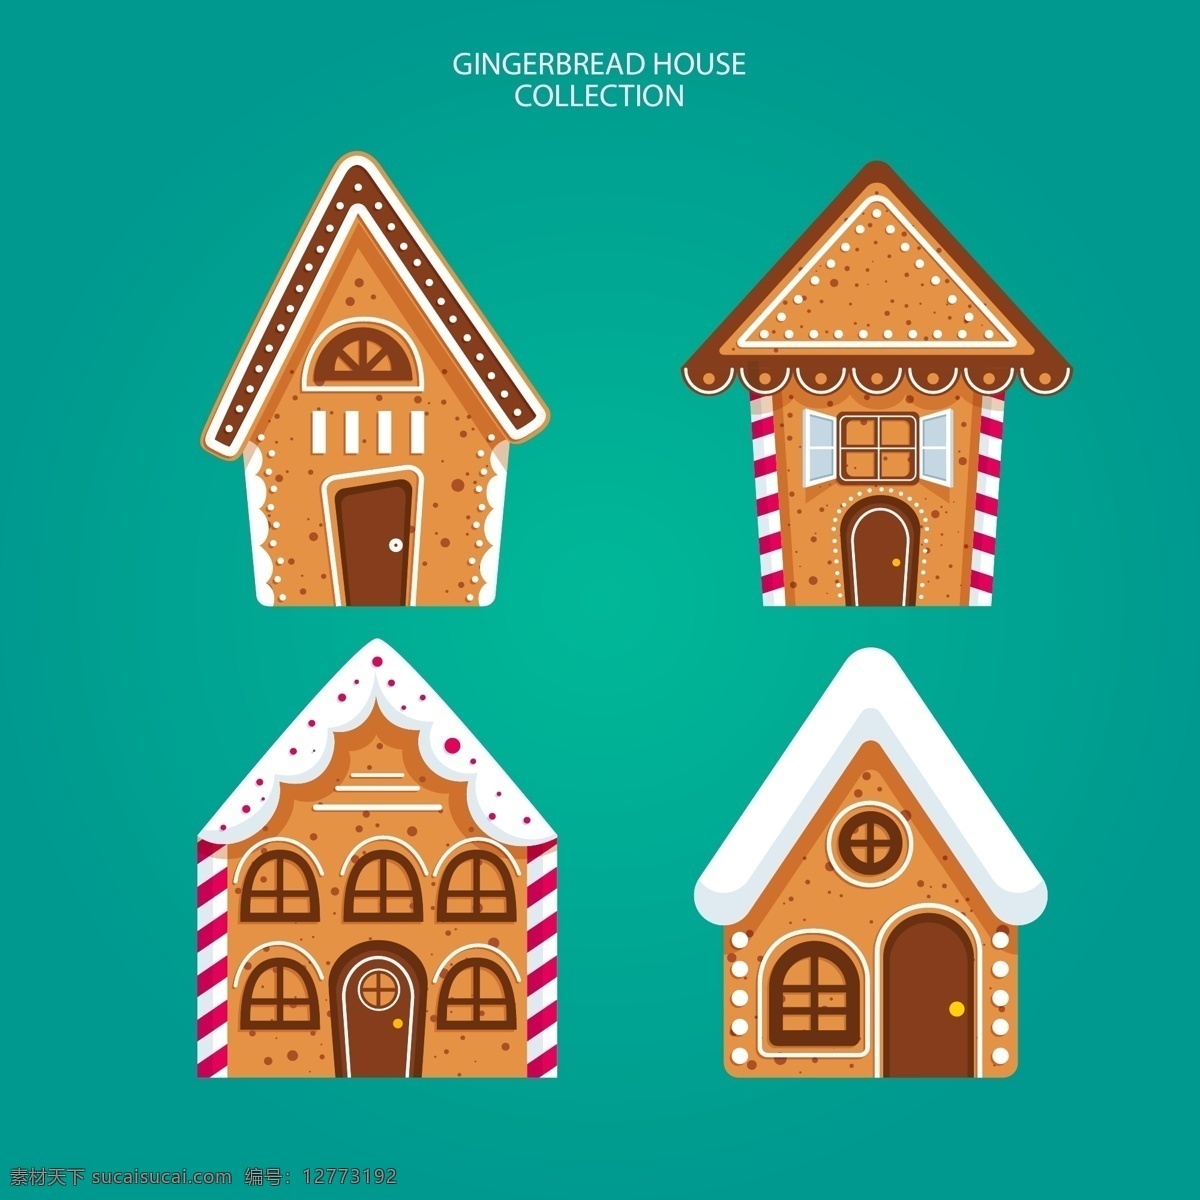 卡通 圣诞节 房子 元素 节日 建筑 过节 庆祝 狂欢 西方节日 假期 扁平 矢量 下雪